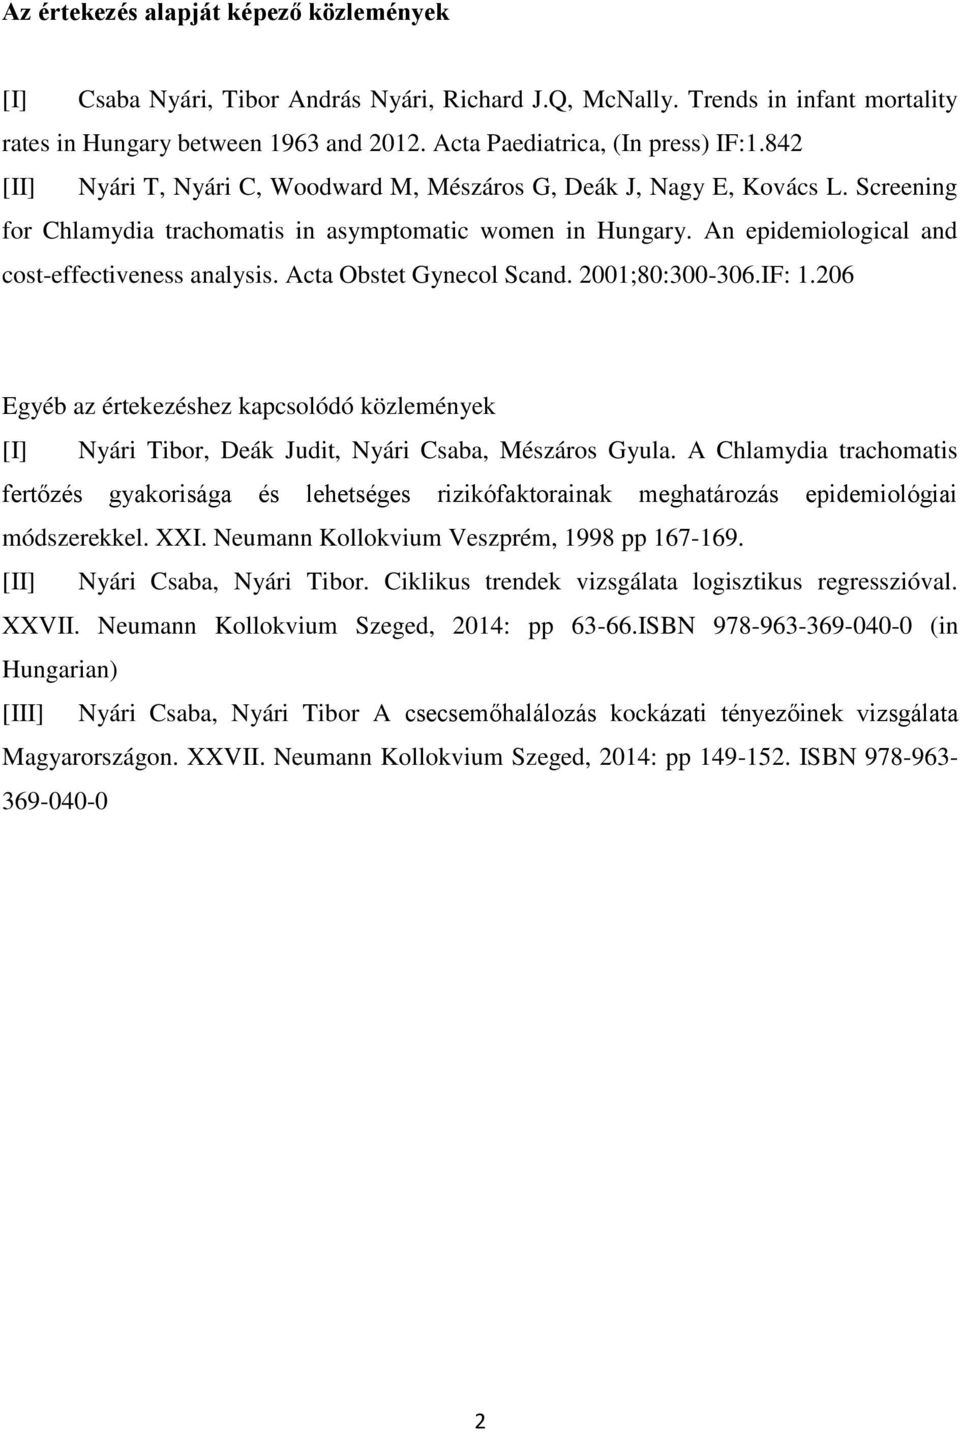 Acta Obstet Gynecol Scand. 2001;80:300-306.IF: 1.206 Egyéb az értekezéshez kapcsolódó közlemények [I] Nyári Tibor, Deák Judit, Nyári Csaba, Mészáros Gyula.